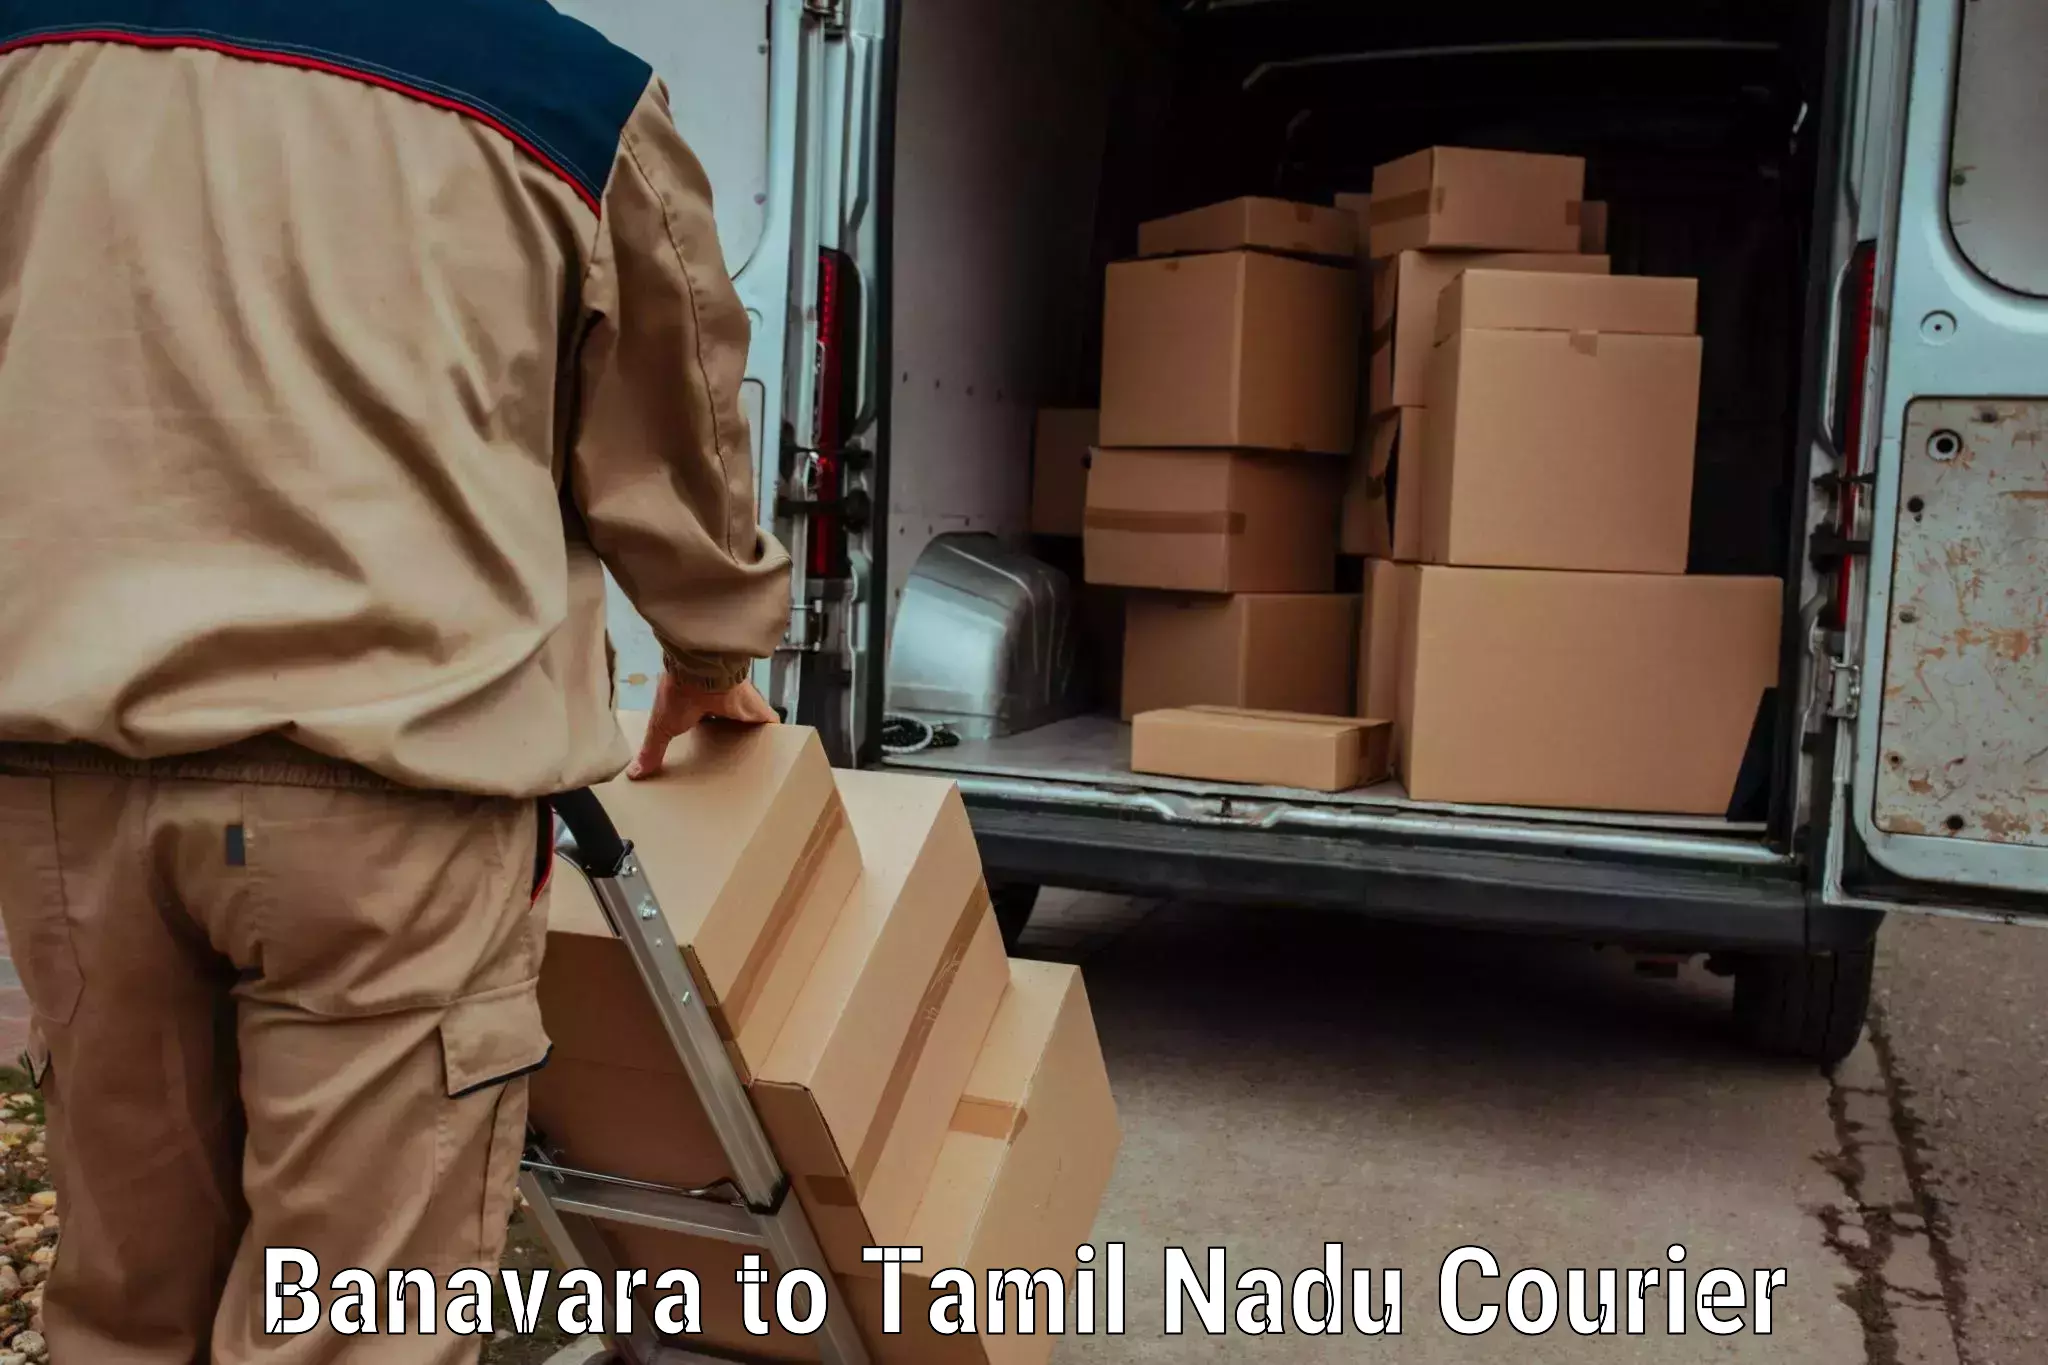 Courier services in Banavara to Devakottai